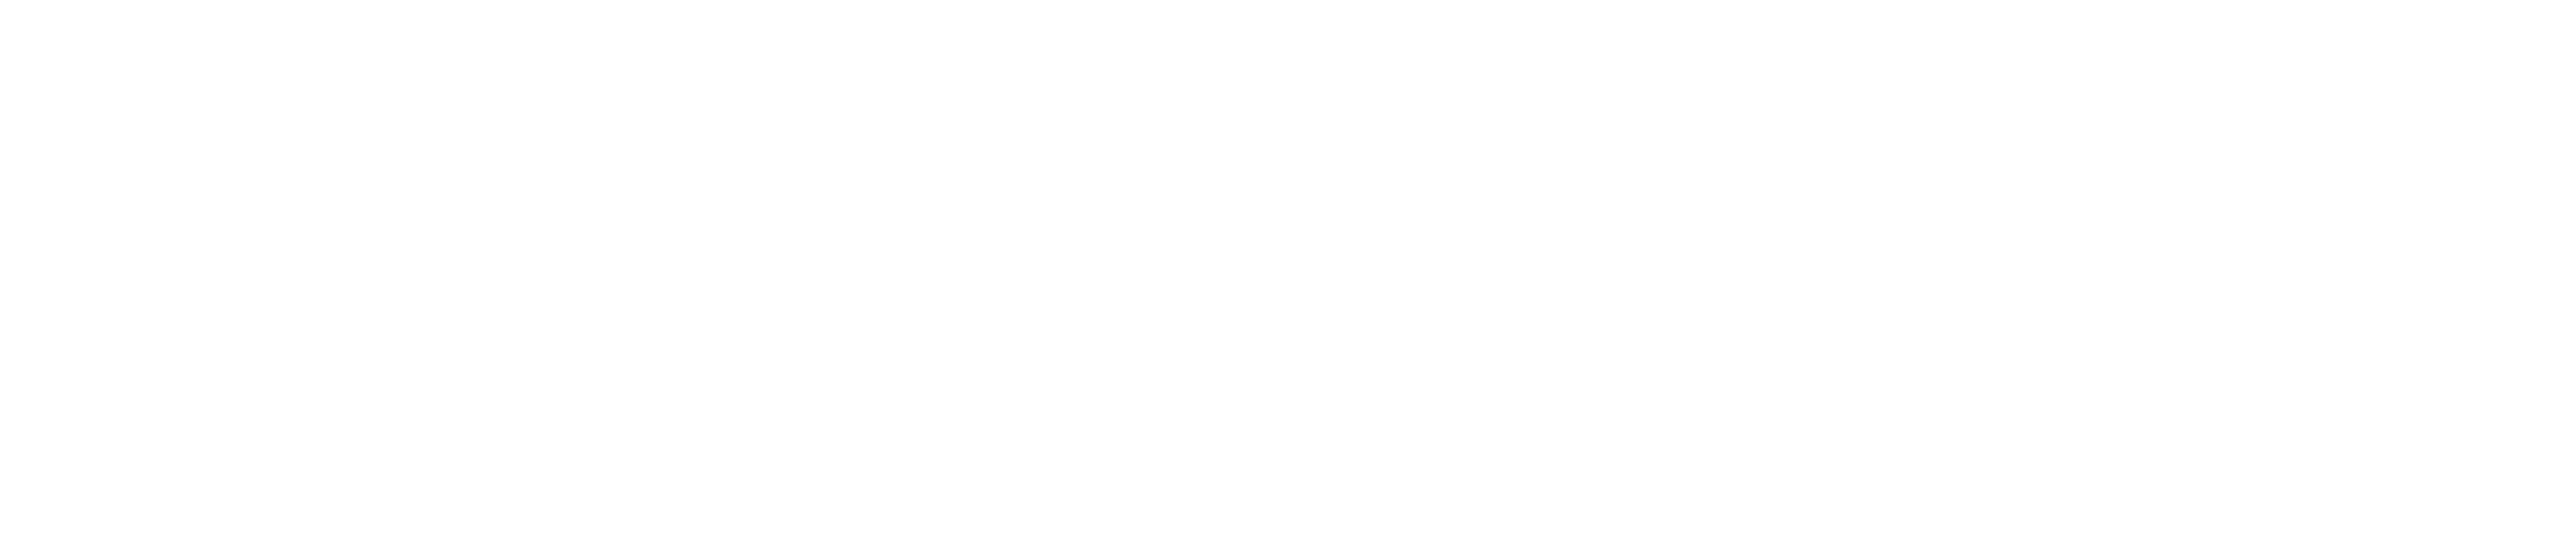 The Edge of Seventeen logo